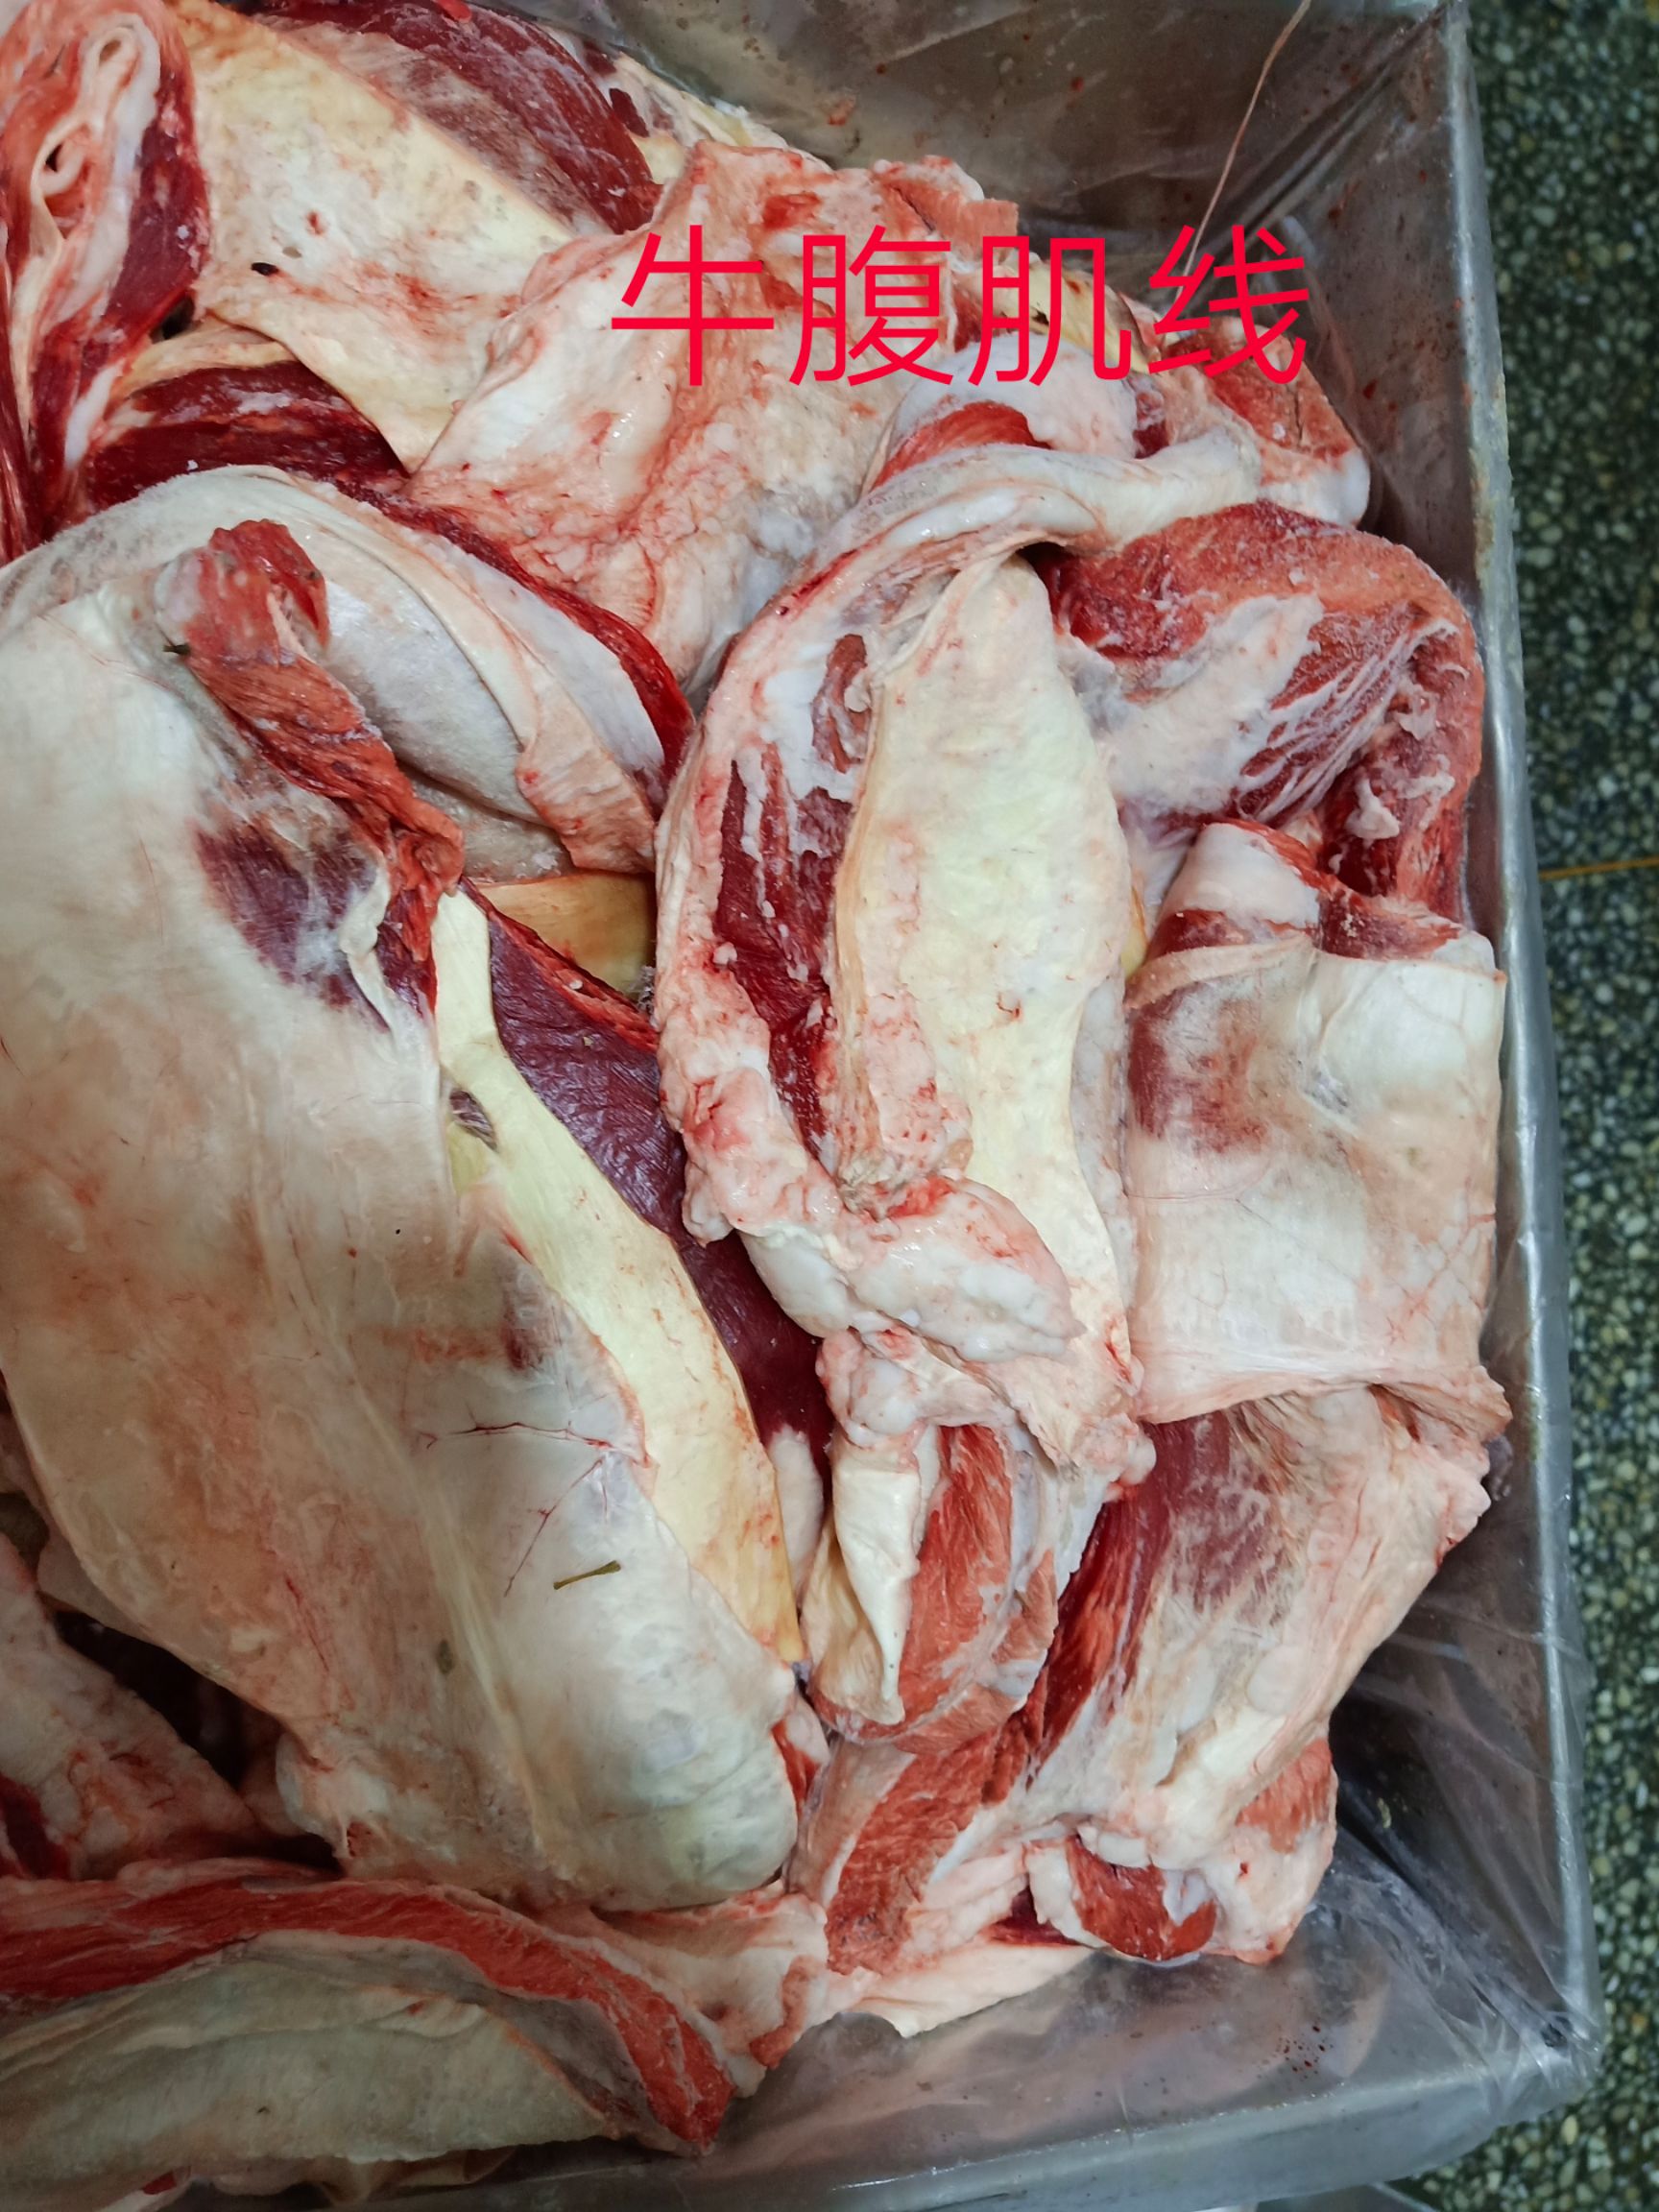 [牛腹肉批发]牛腹肉 牛腹肌线价格24.5元/斤 惠农网